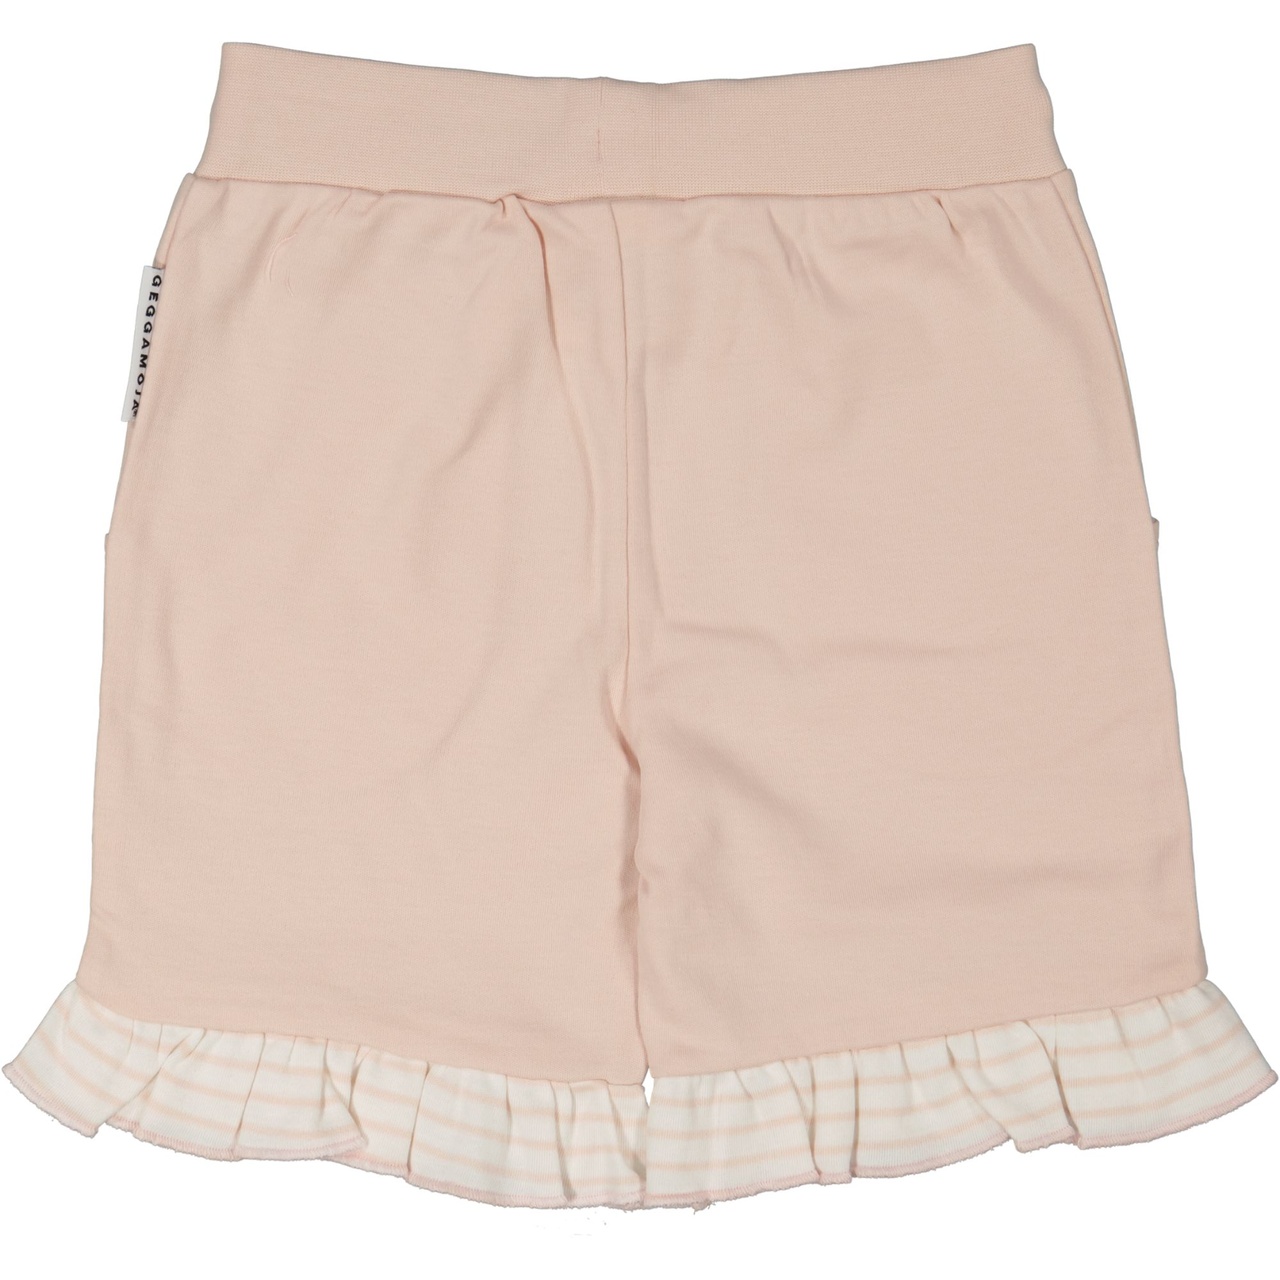 Flounce shorts Light pink 86/92